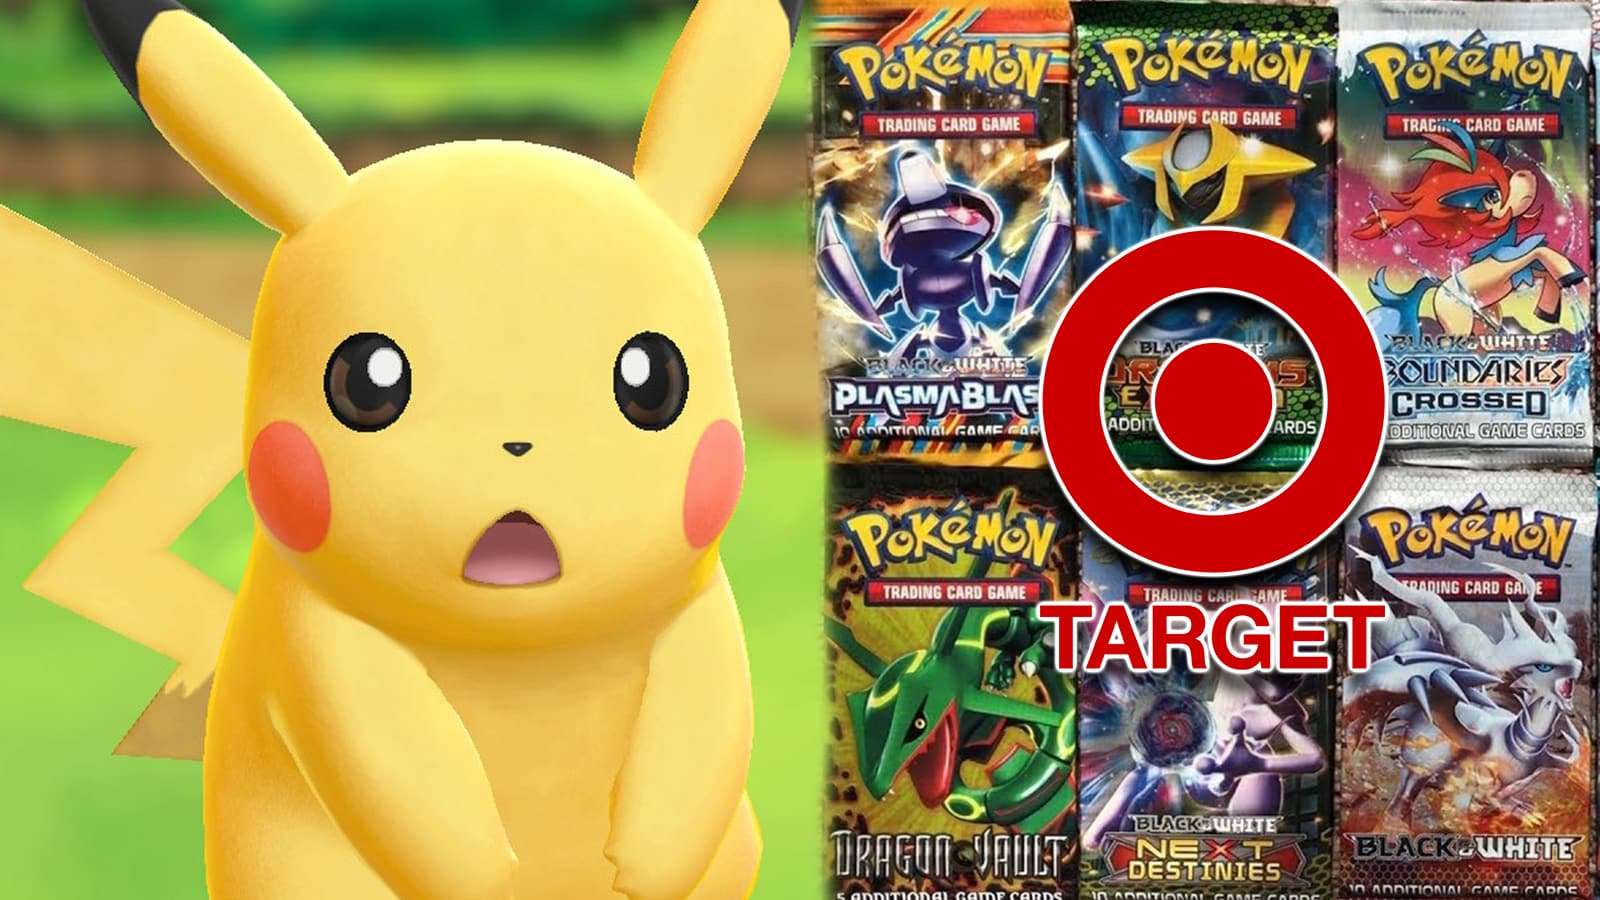 Pokemon Pikachu next to Target logo Black and White TCG